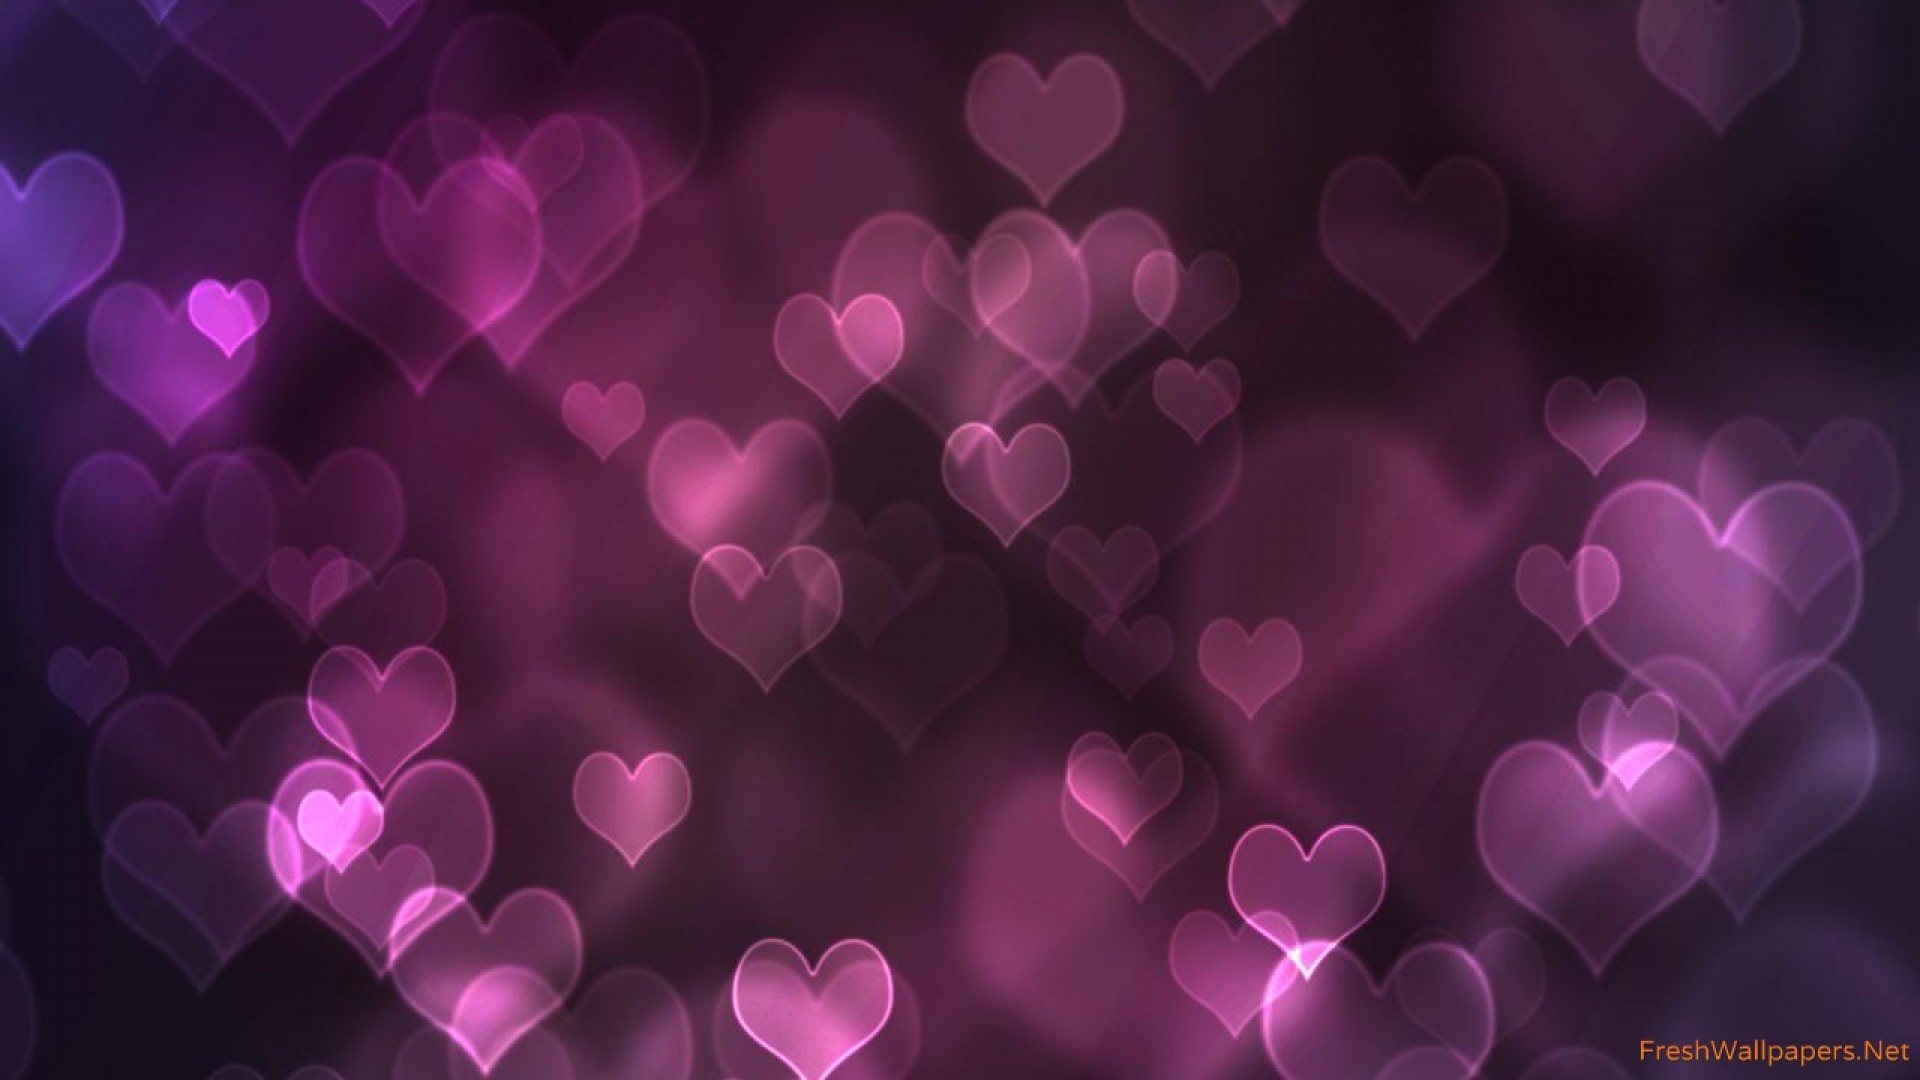 Purple hearts love Wallpaper 1920×1080